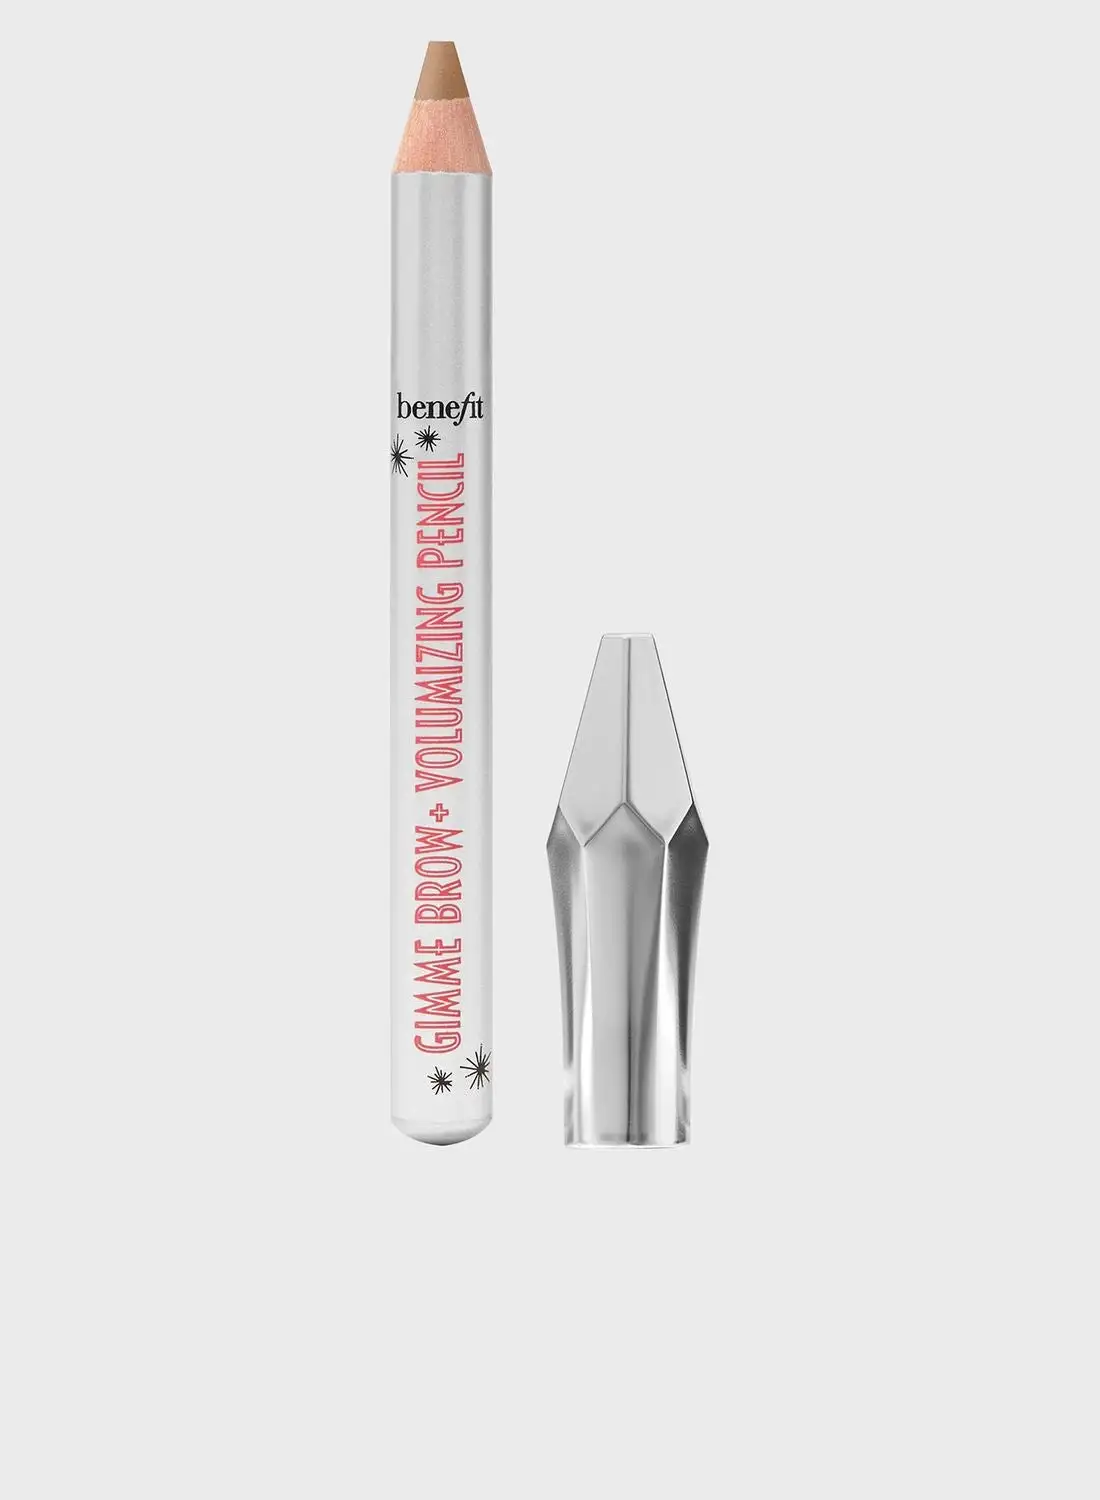 Benefit Cosmetics Gimme Brow + Volumizing Pencil - Volumizing Brow Pencil - Mini - 04 Warm Deep Brown